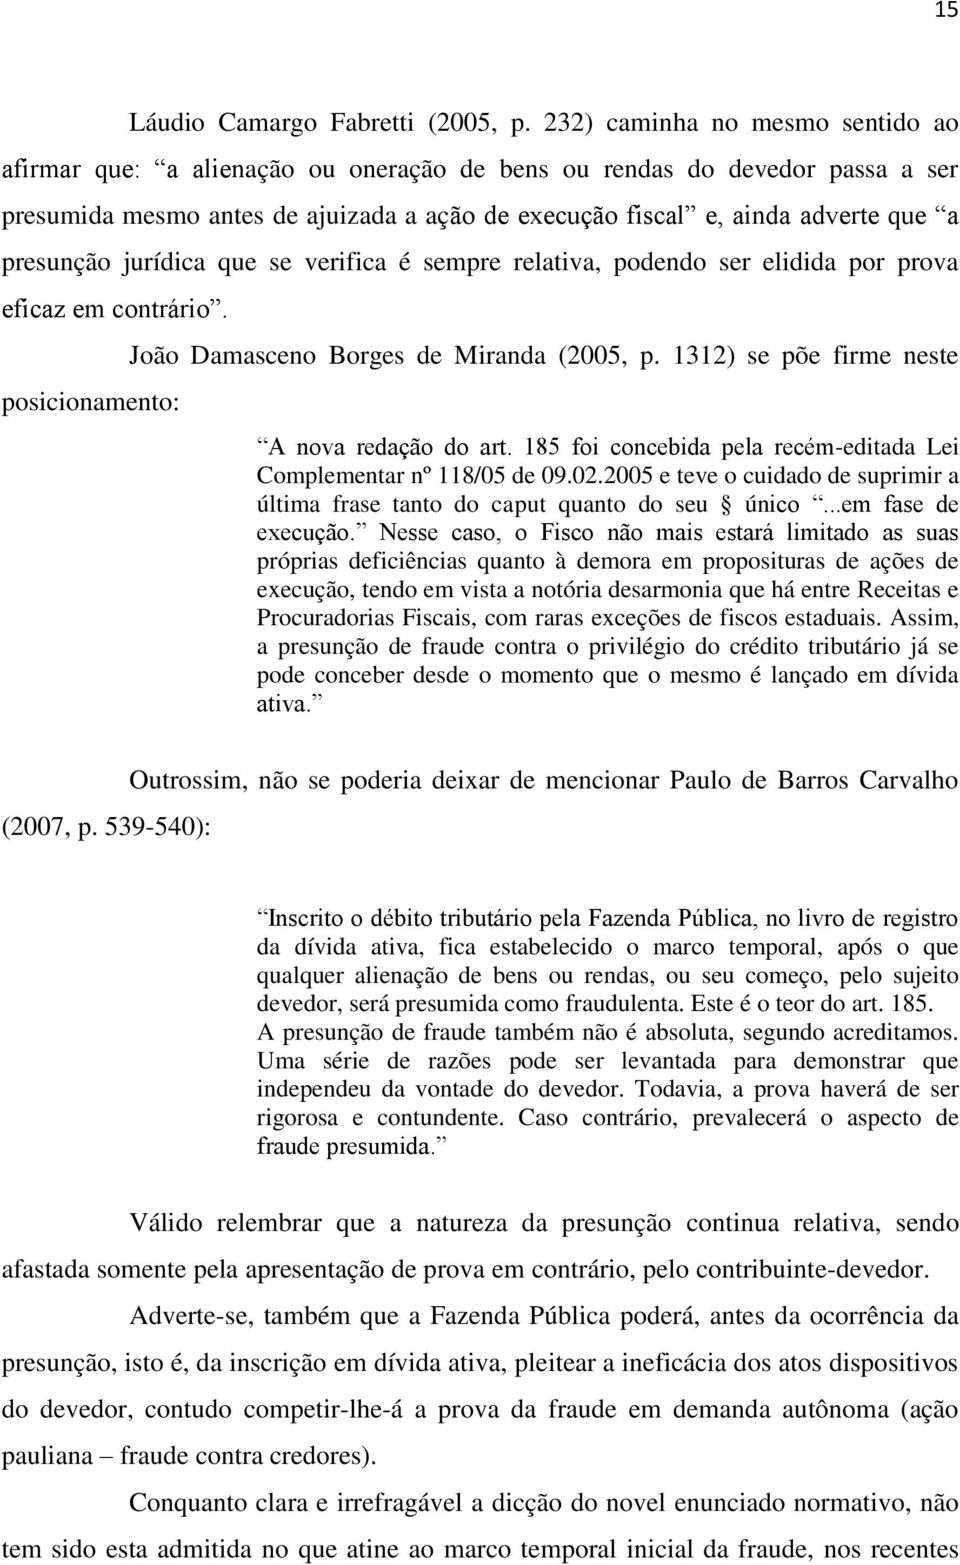 presunção jurídica que se verifica é sempre relativa, podendo ser elidida por prova eficaz em contrário. posicionamento: João Damasceno Borges de Miranda (2005, p.